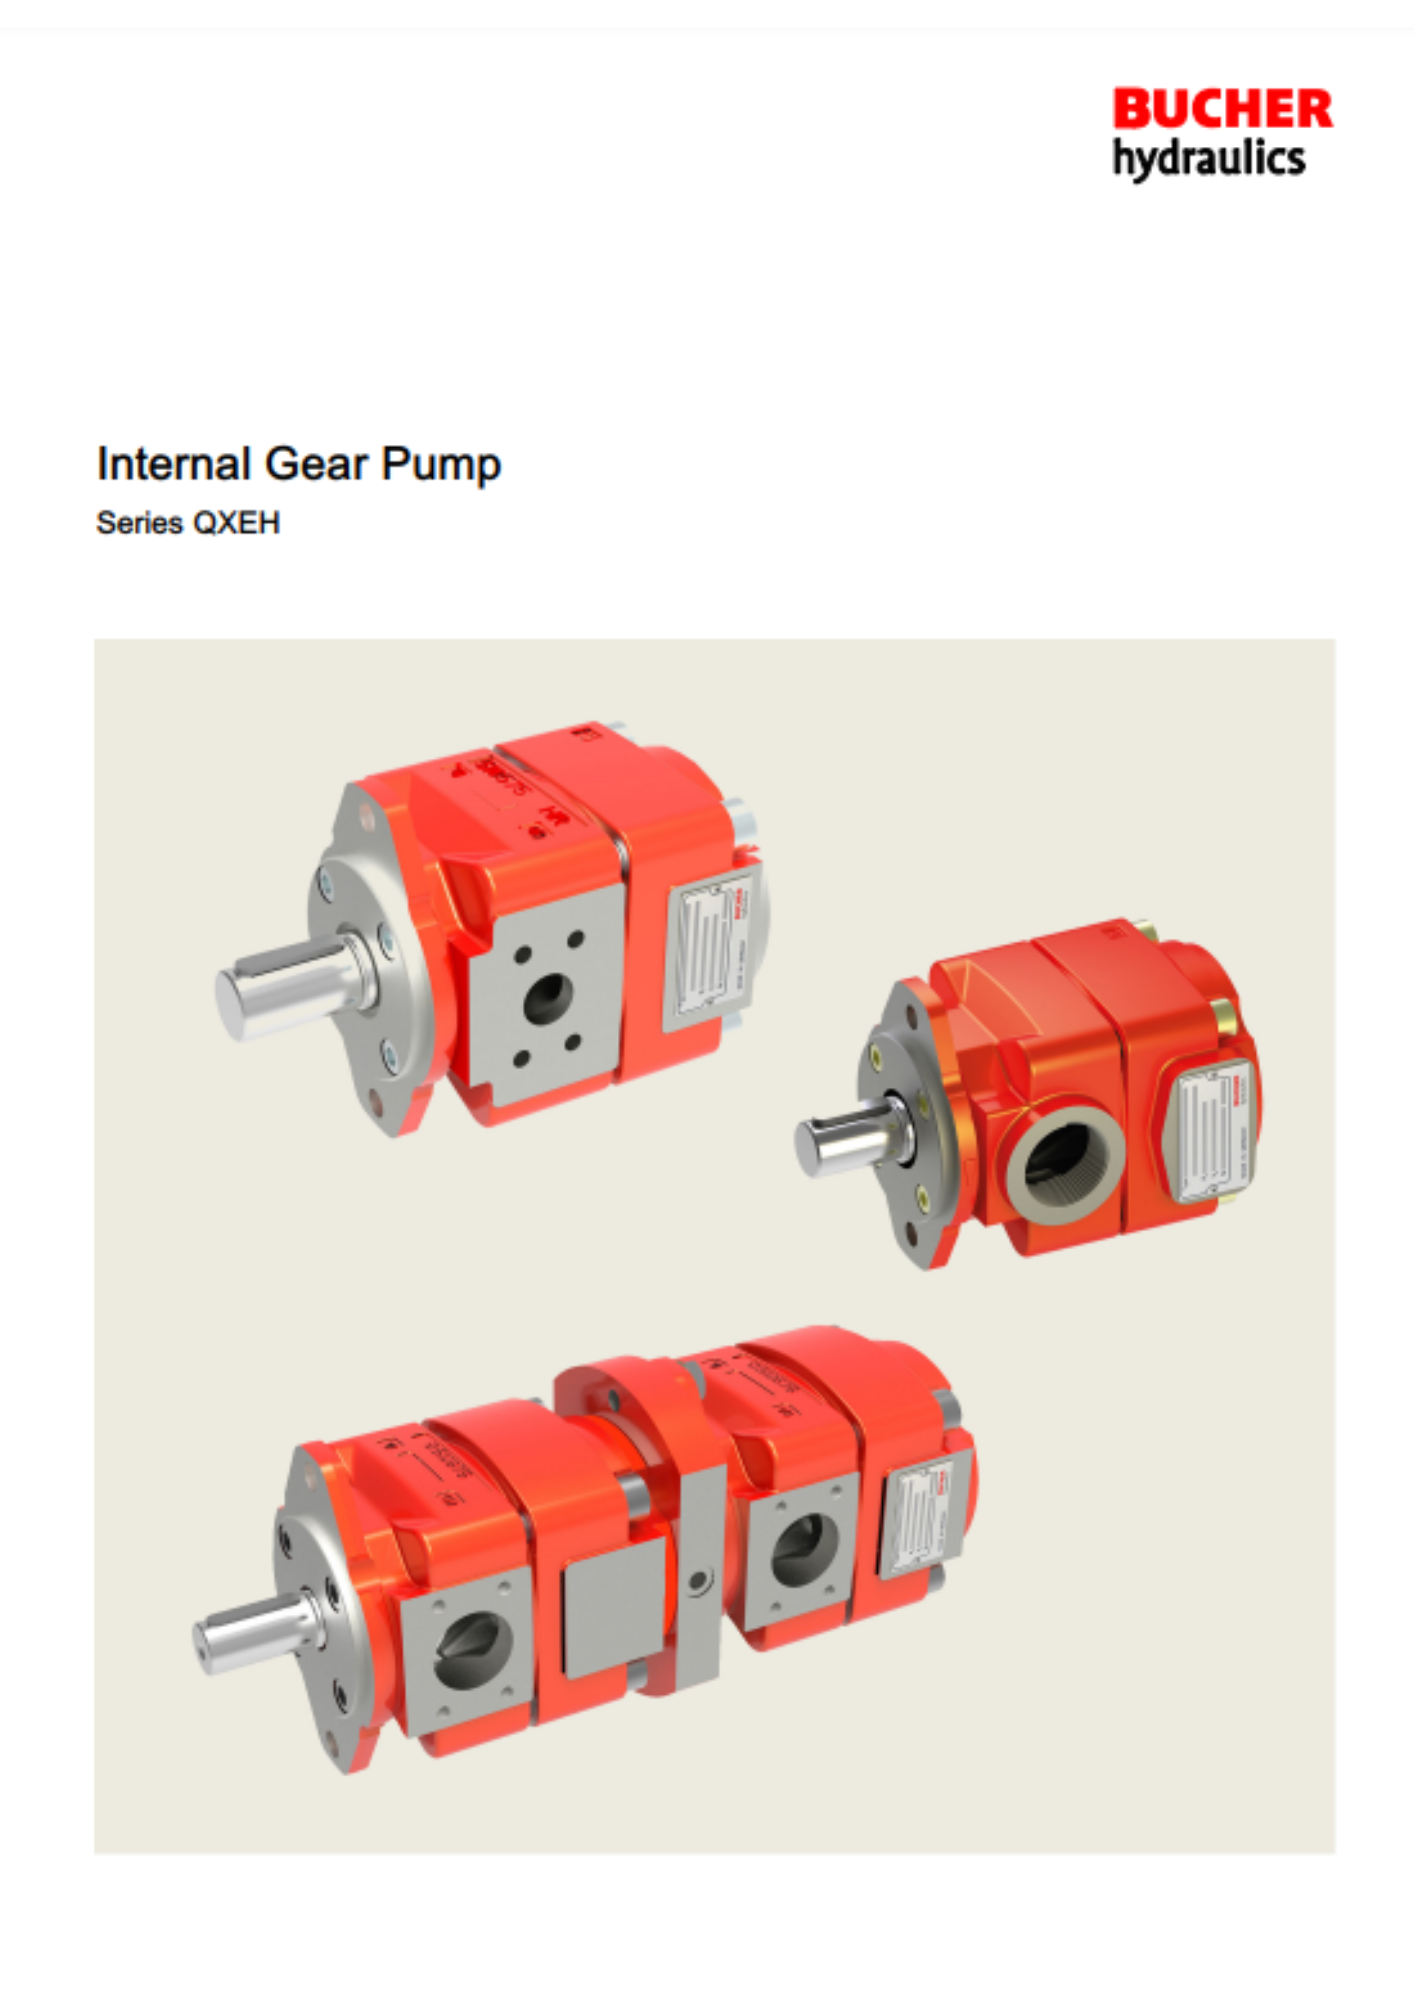 Bucher: QXEH internal gear pumps